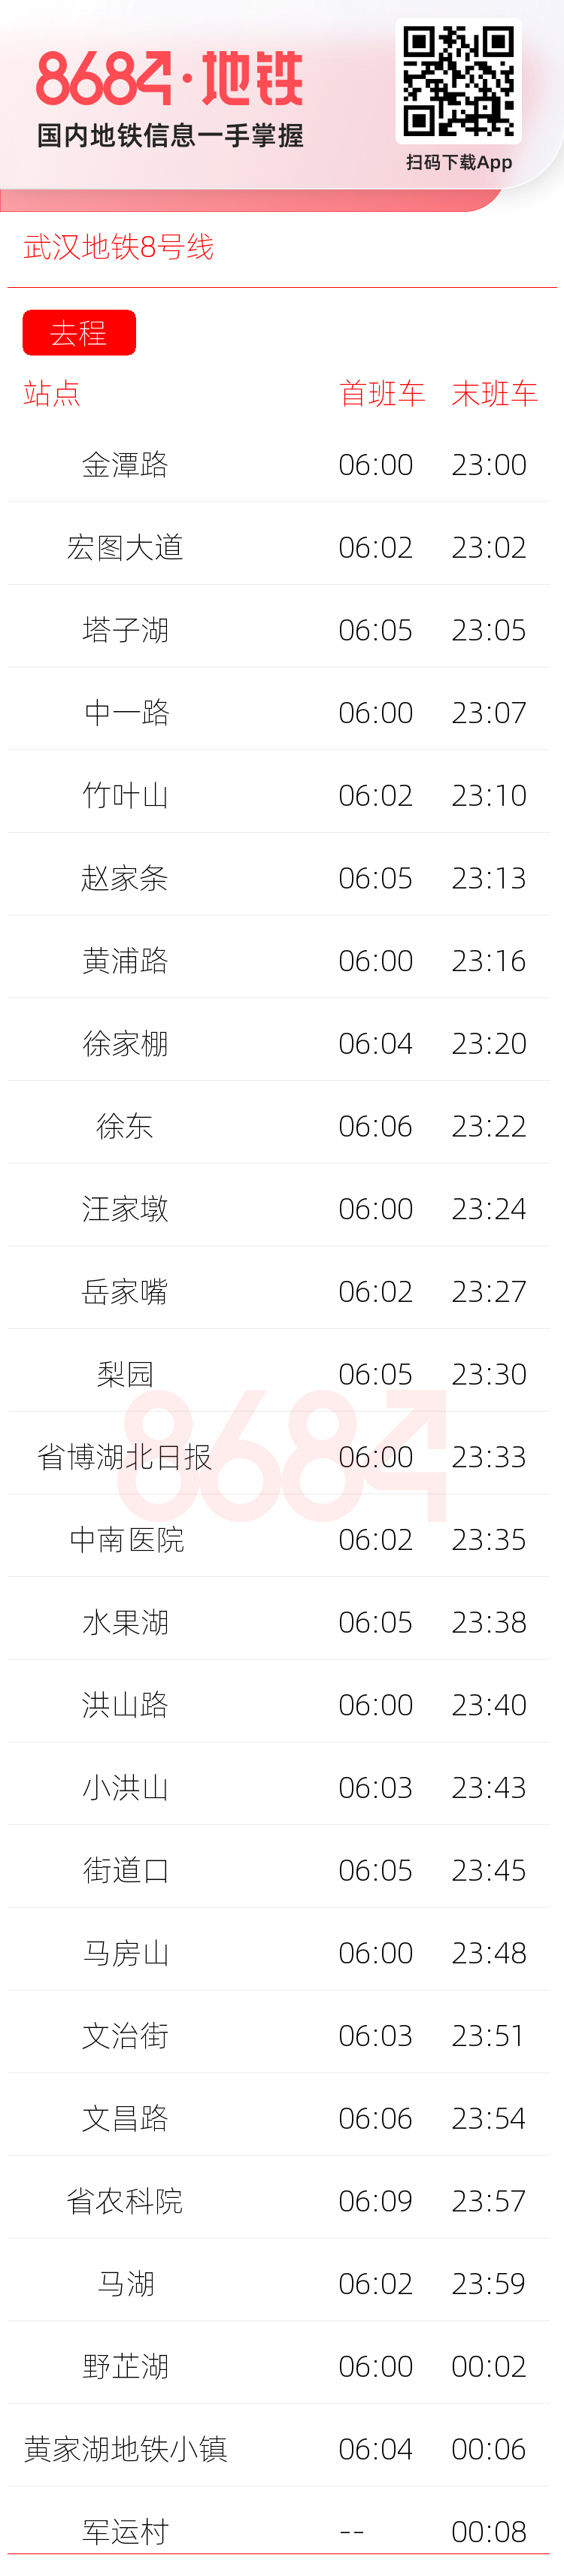 武汉地铁8号线运营时间表